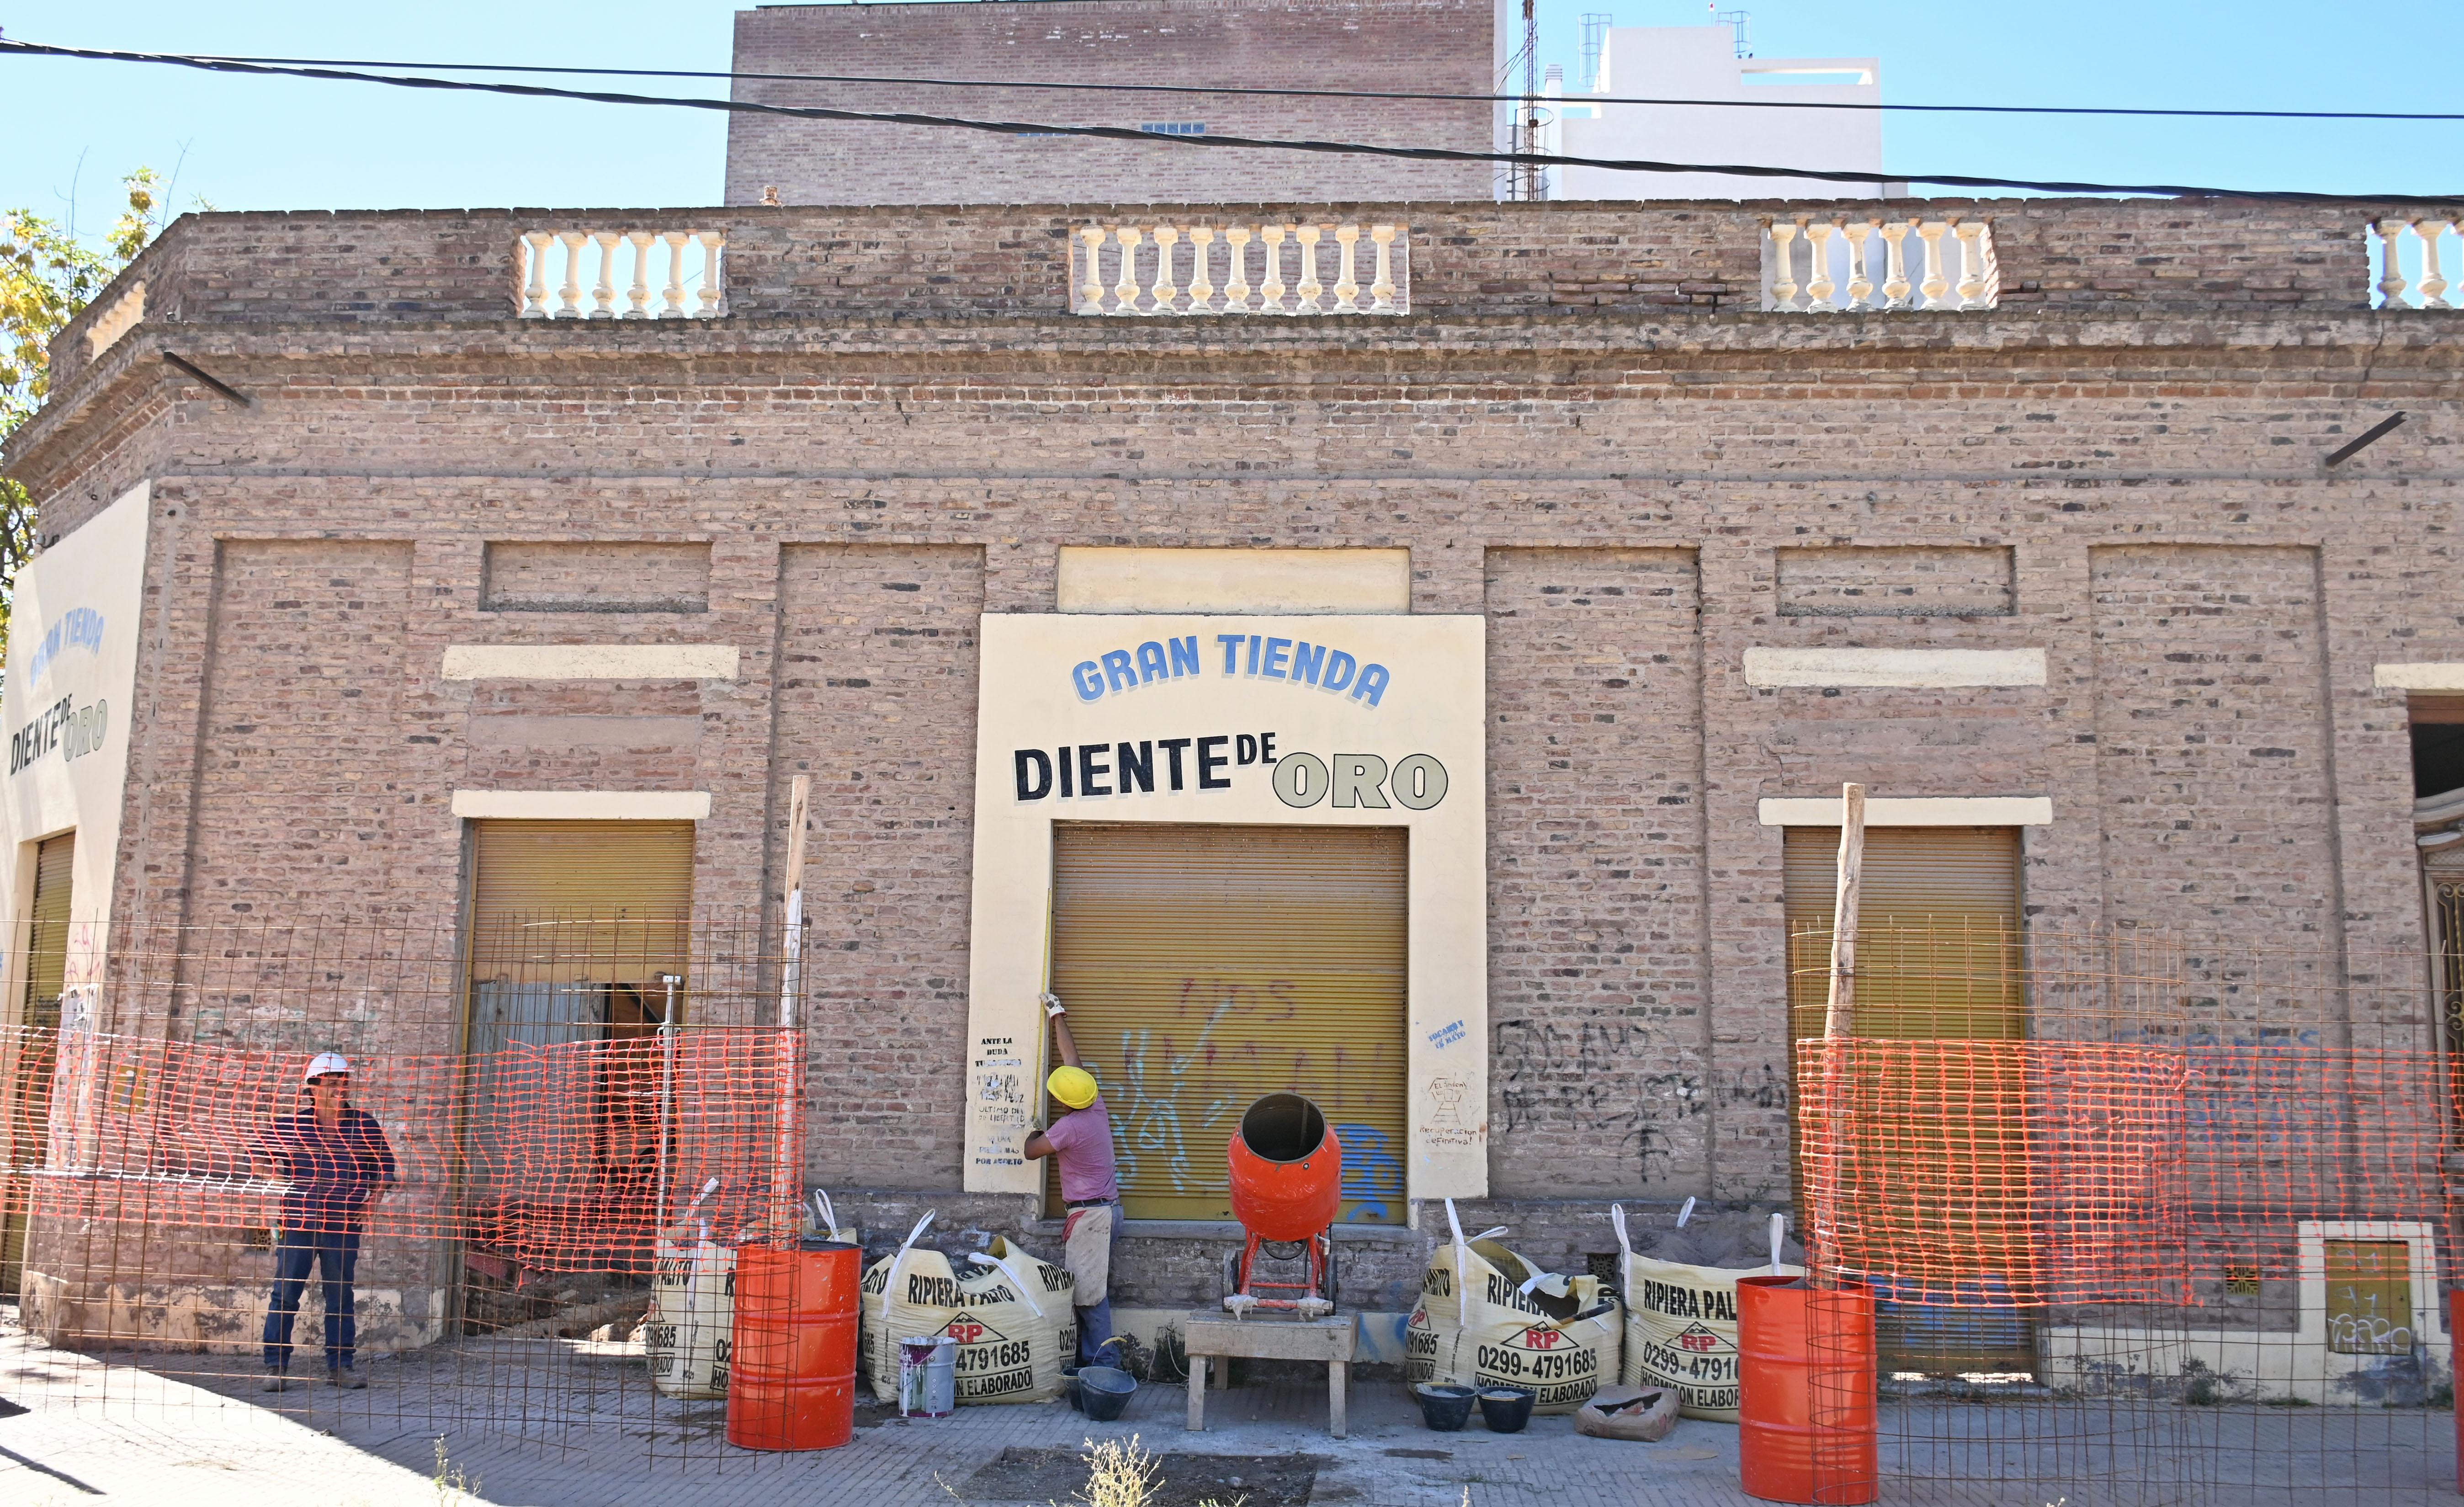 Los herederos cedieron los derechos al municipio en el año 1994 pero pusieron como condición mantener la fachada original. Foto: Flor Salto